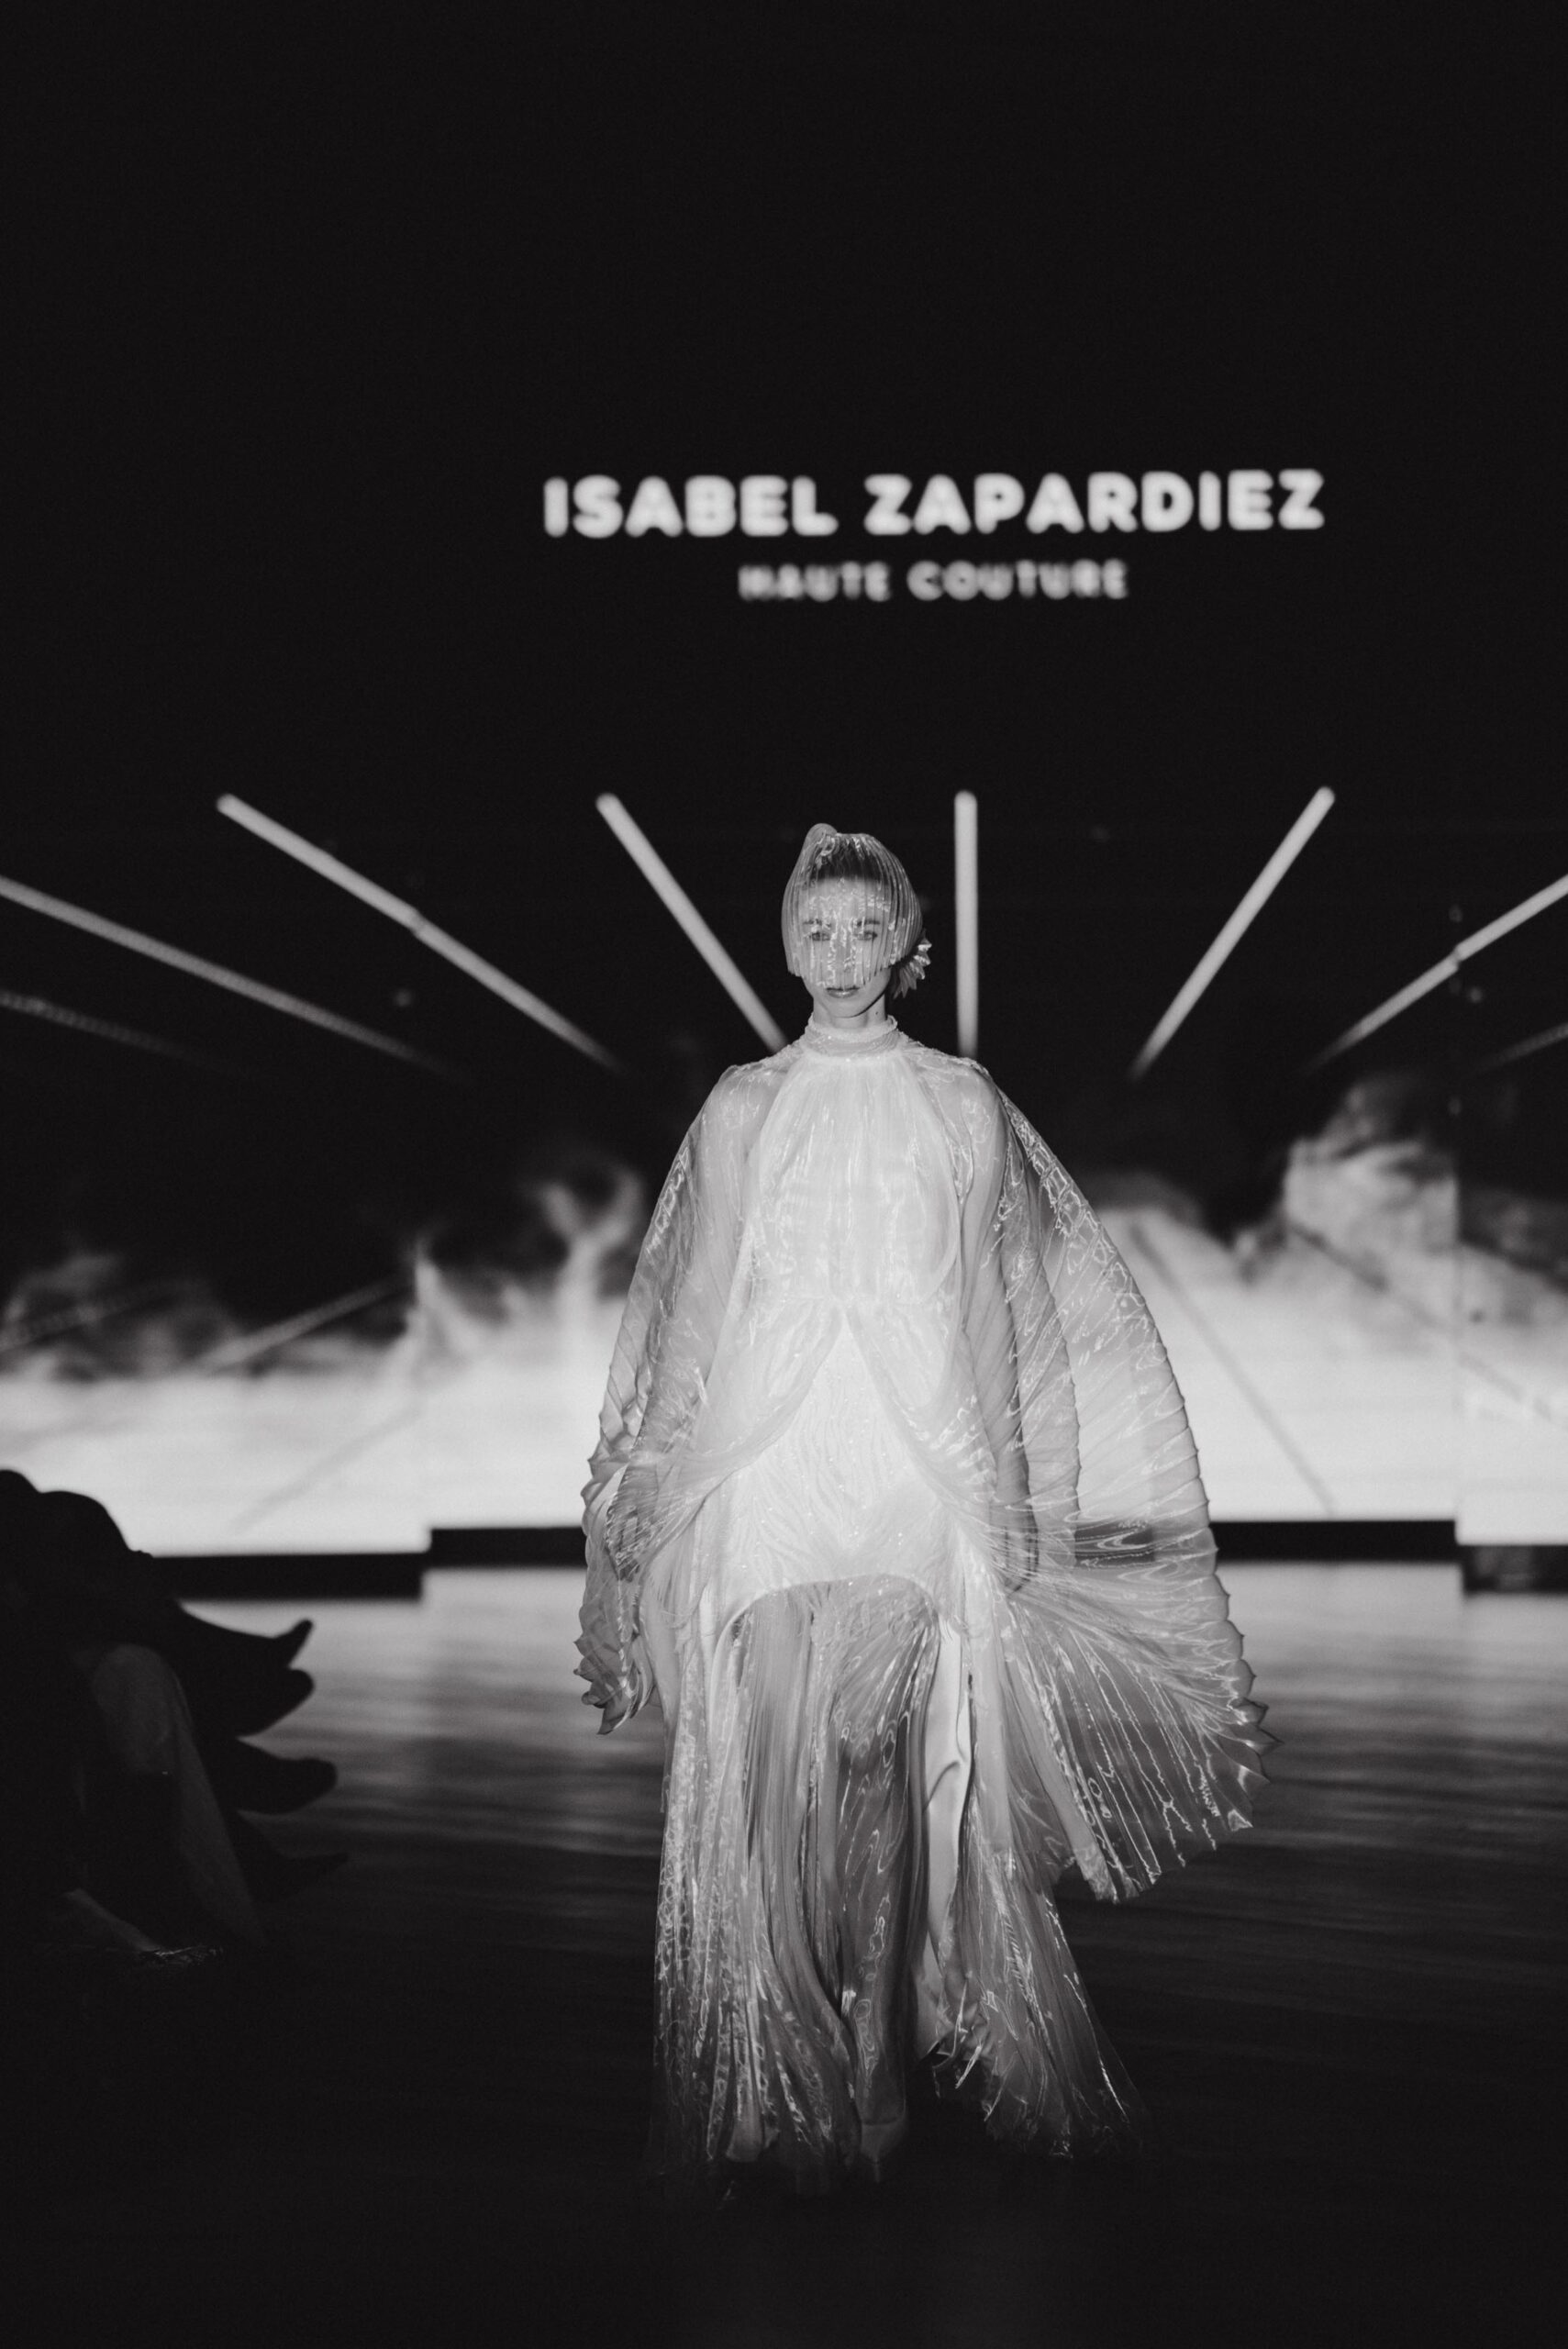 Isabel Zapardiez presenta nueva colección nupcial con guiños a la tecnología de vanguardia